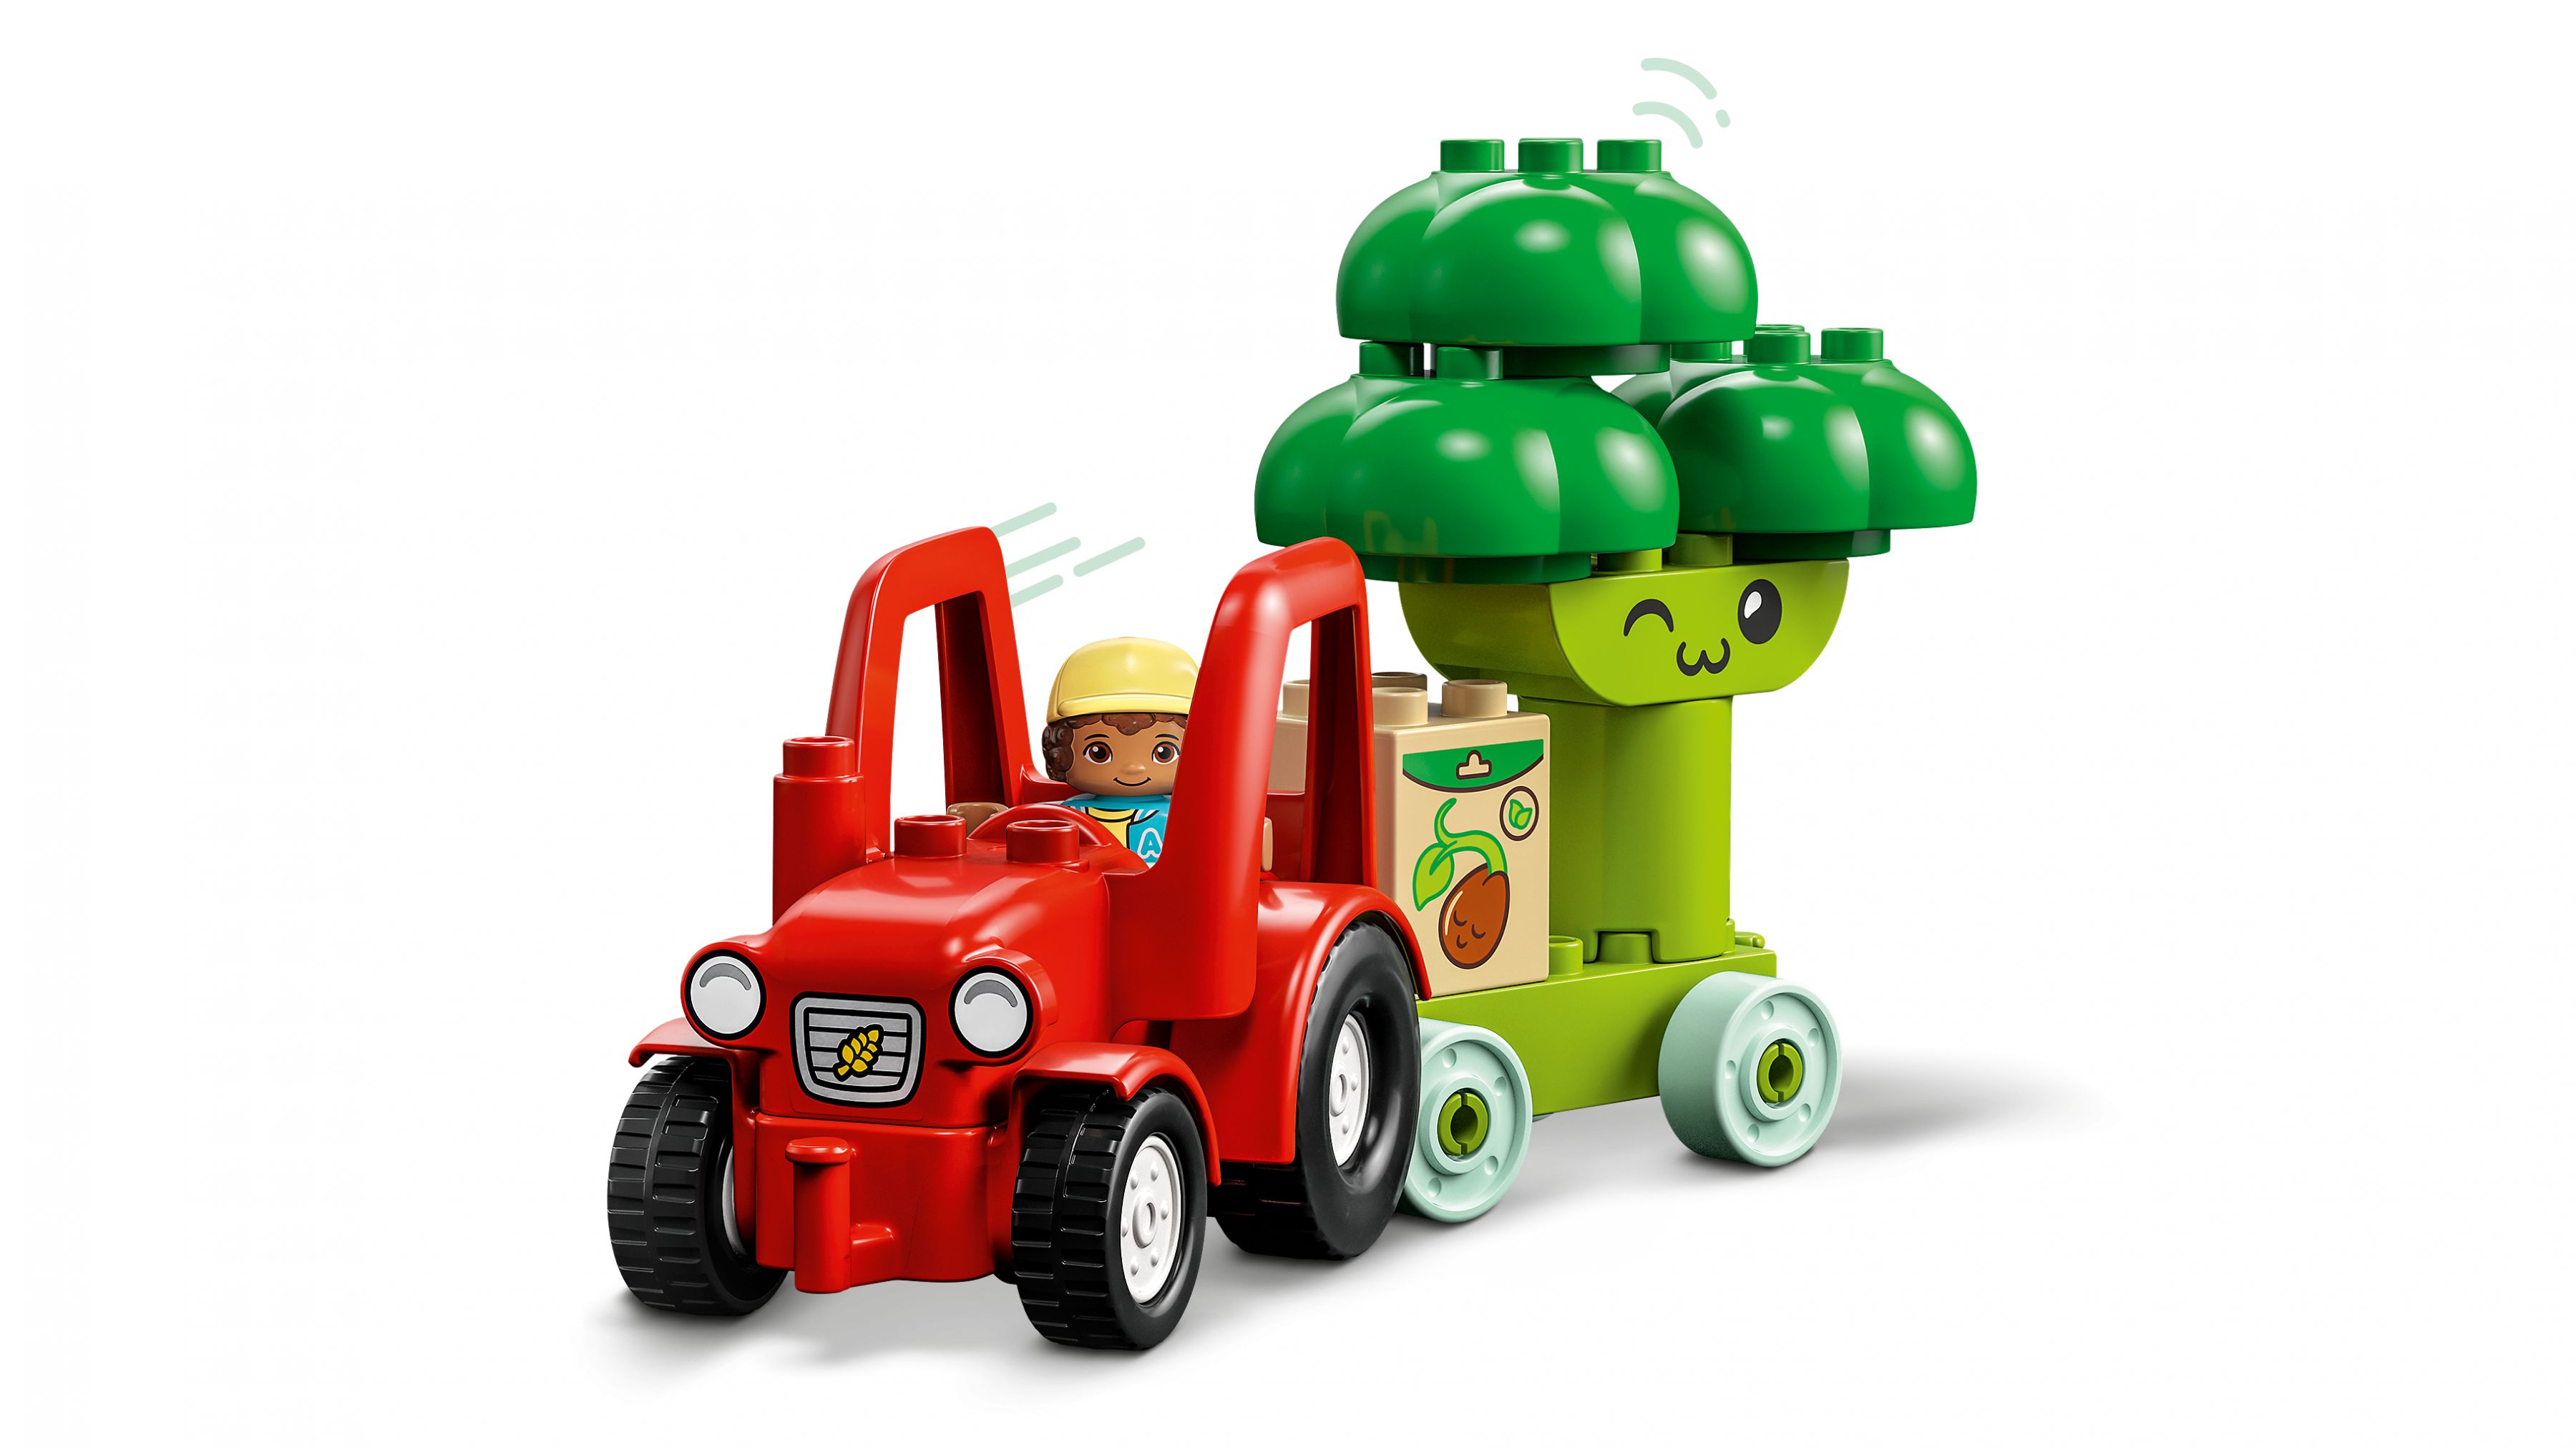 LEGO Duplo 10982 Obst- und Gemüse-Traktor LEGO_10982_WEB_SEC02_NOBG.jpg